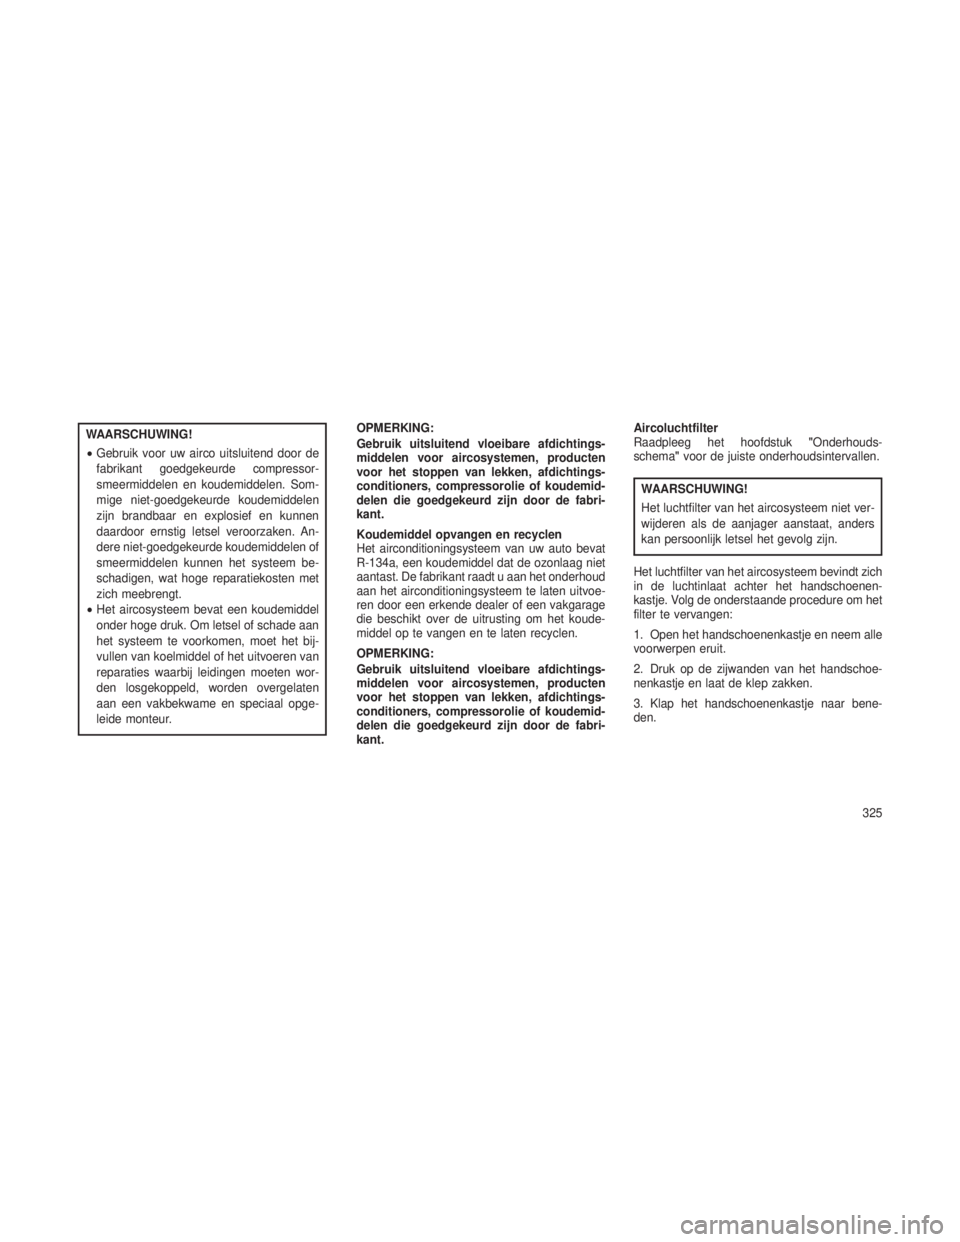 JEEP GRAND CHEROKEE 2013  Instructieboek (in Dutch) WAARSCHUWING!
•Gebruik voor uw airco uitsluitend door de
fabrikant goedgekeurde compressor-
smeermiddelen en koudemiddelen. Som-
mige niet-goedgekeurde koudemiddelen
zijn brandbaar en explosief en k